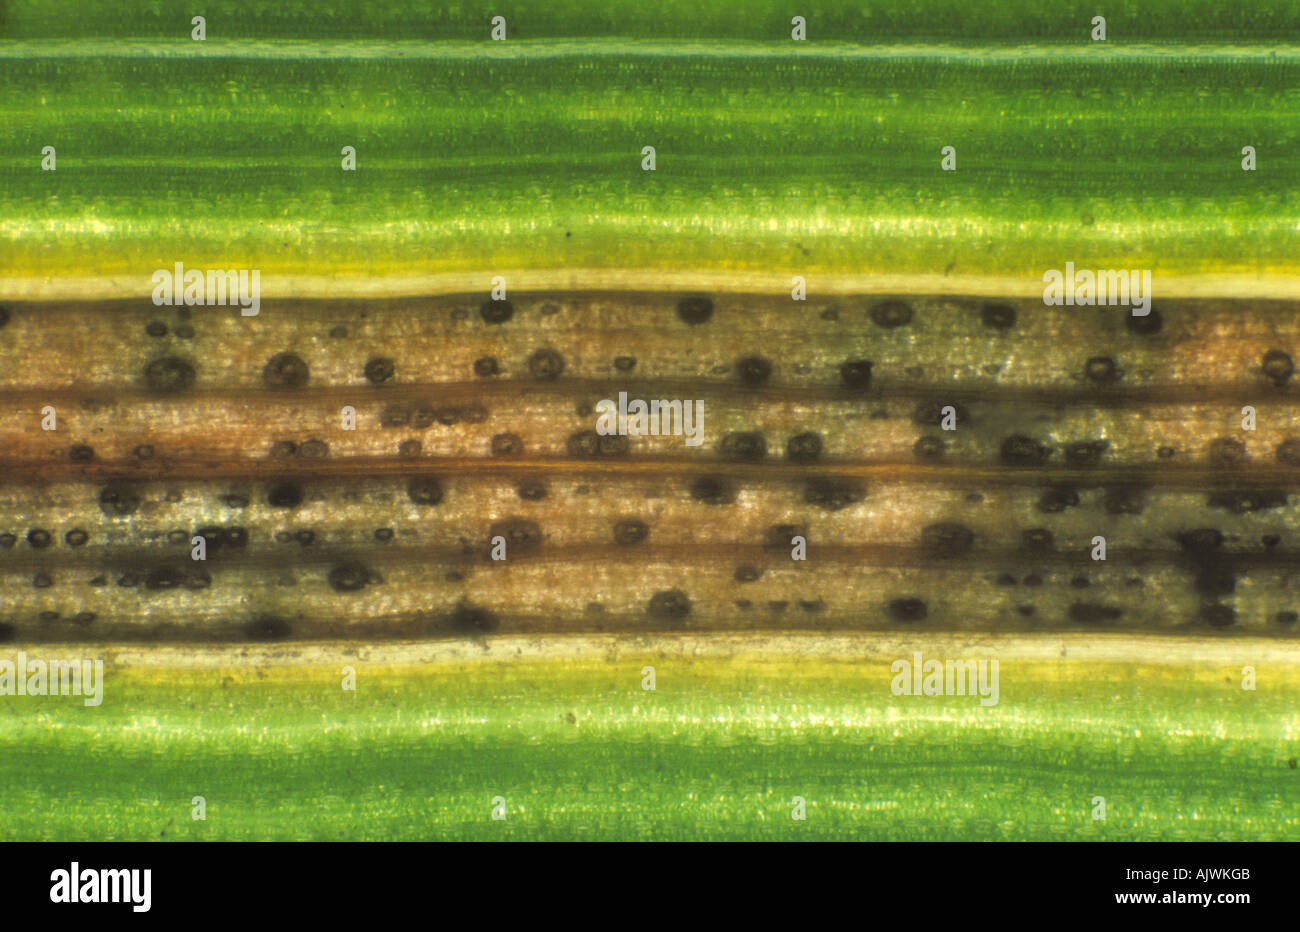 Septoria foglia macchia ZSymosettoria tritici baclit lesione per mostrare pycnidia in foglia di grano Foto Stock